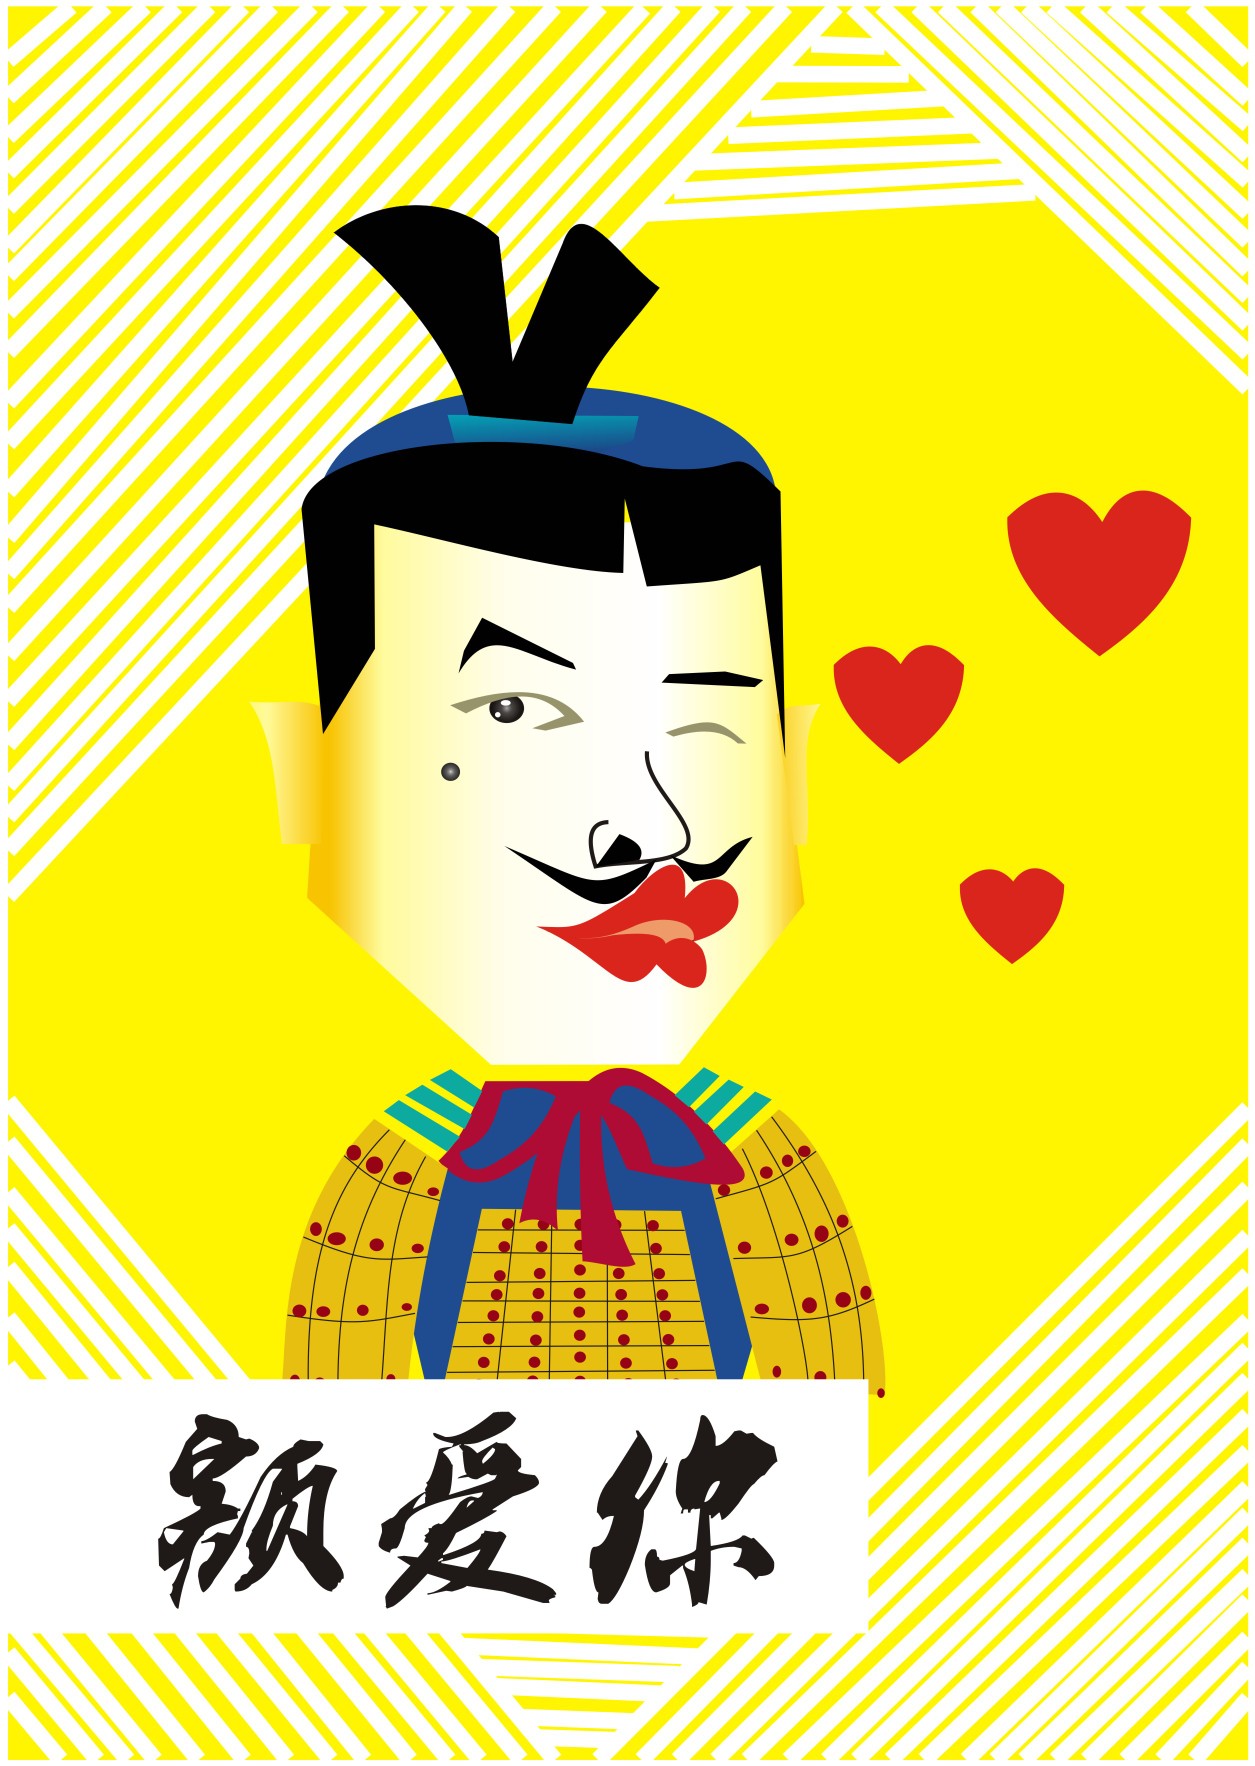 以兵马俑为人物形象设计几个有背景的陕西话表情图 by目鱼